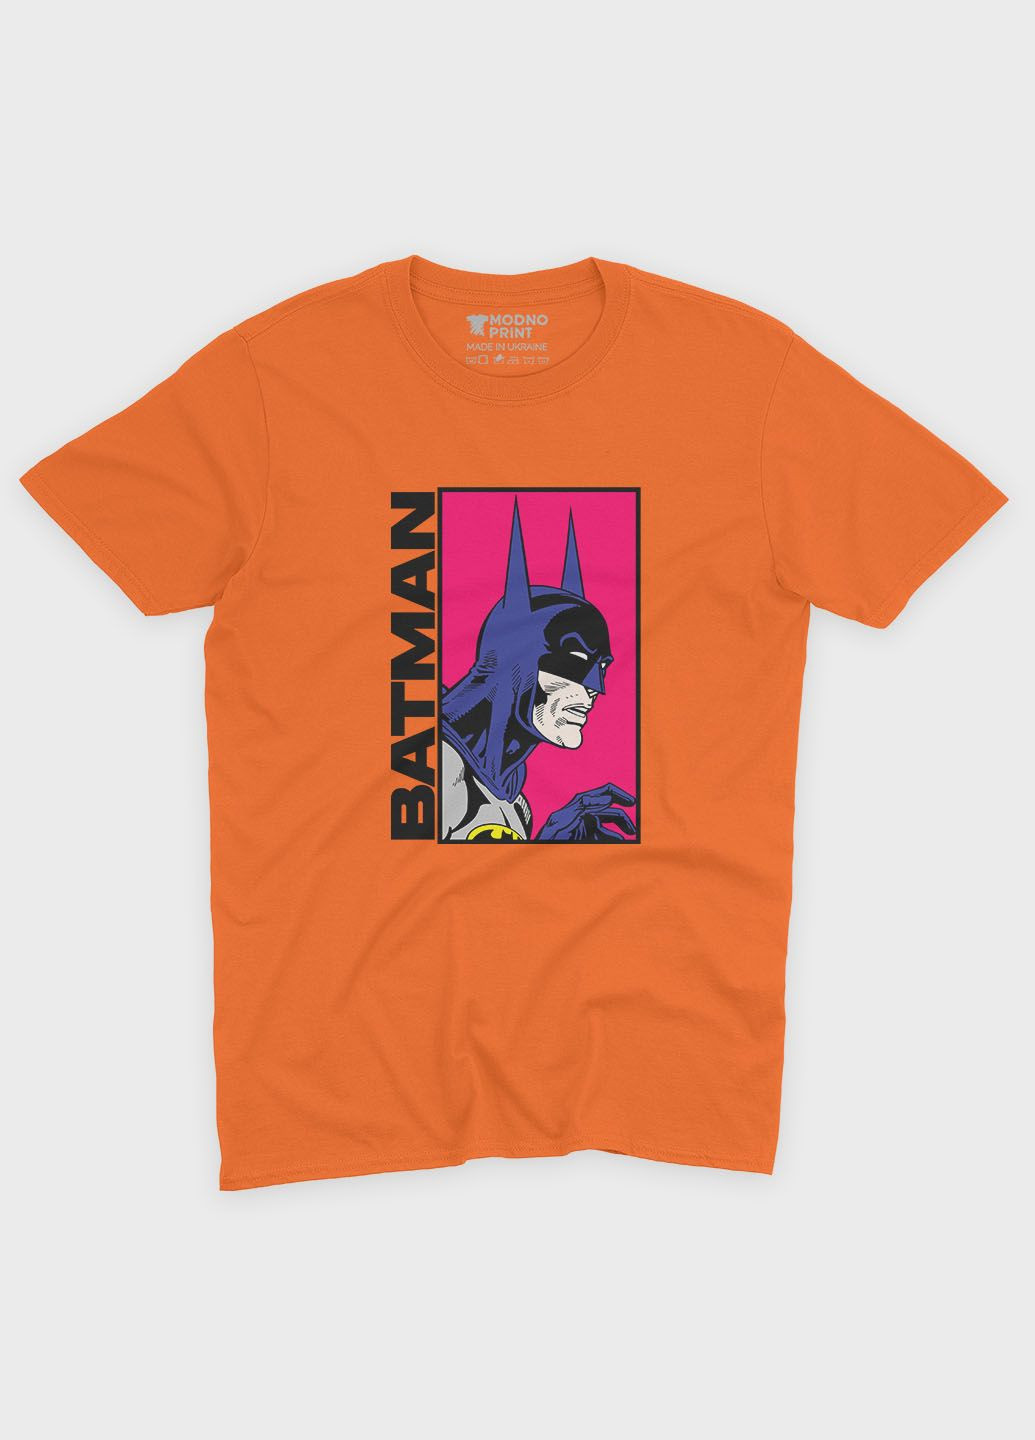 Оранжевая демисезонная футболка для мальчика с принтом супергероя - бэтмен (ts001-1-ora-006-003-024-b) Modno